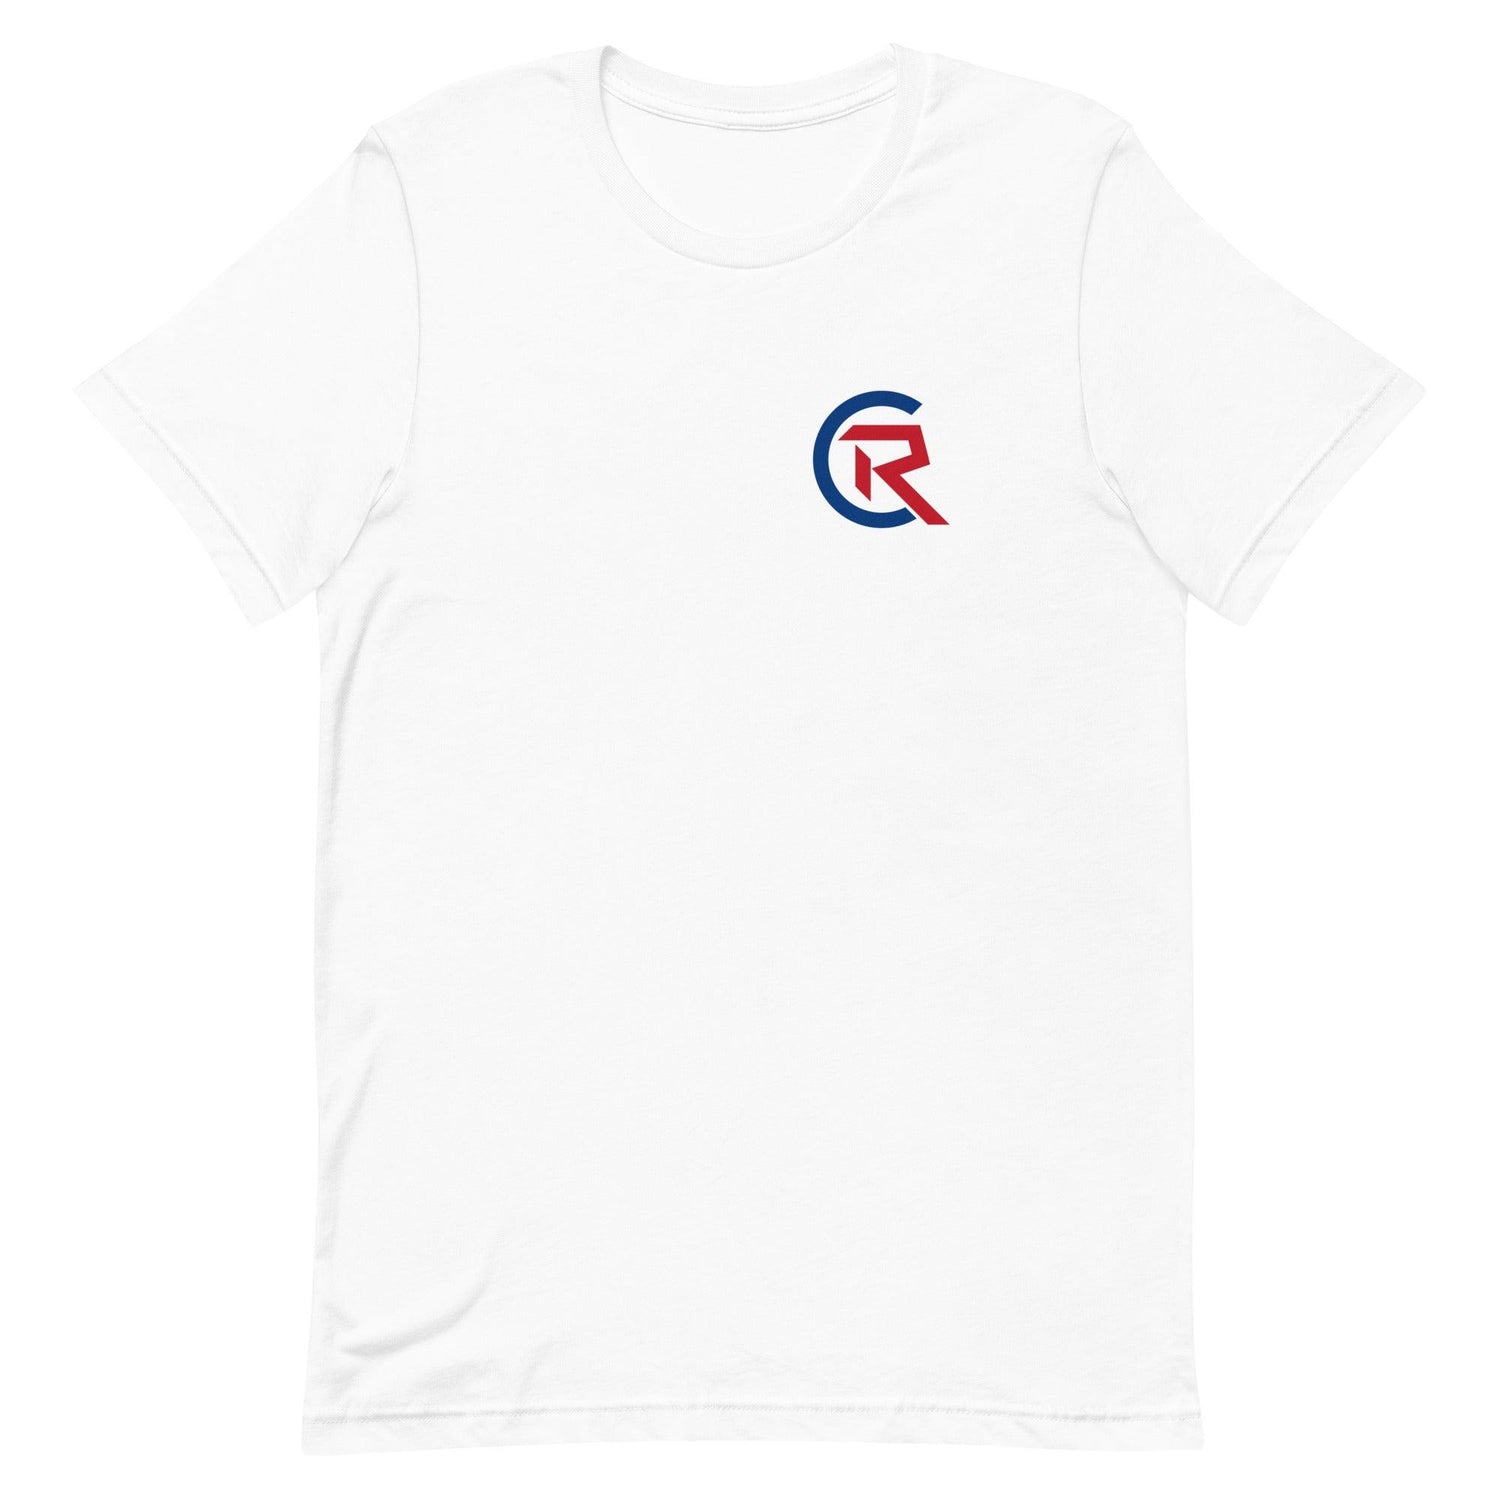 Cole Ragans “Signature” t-shirt - Fan Arch